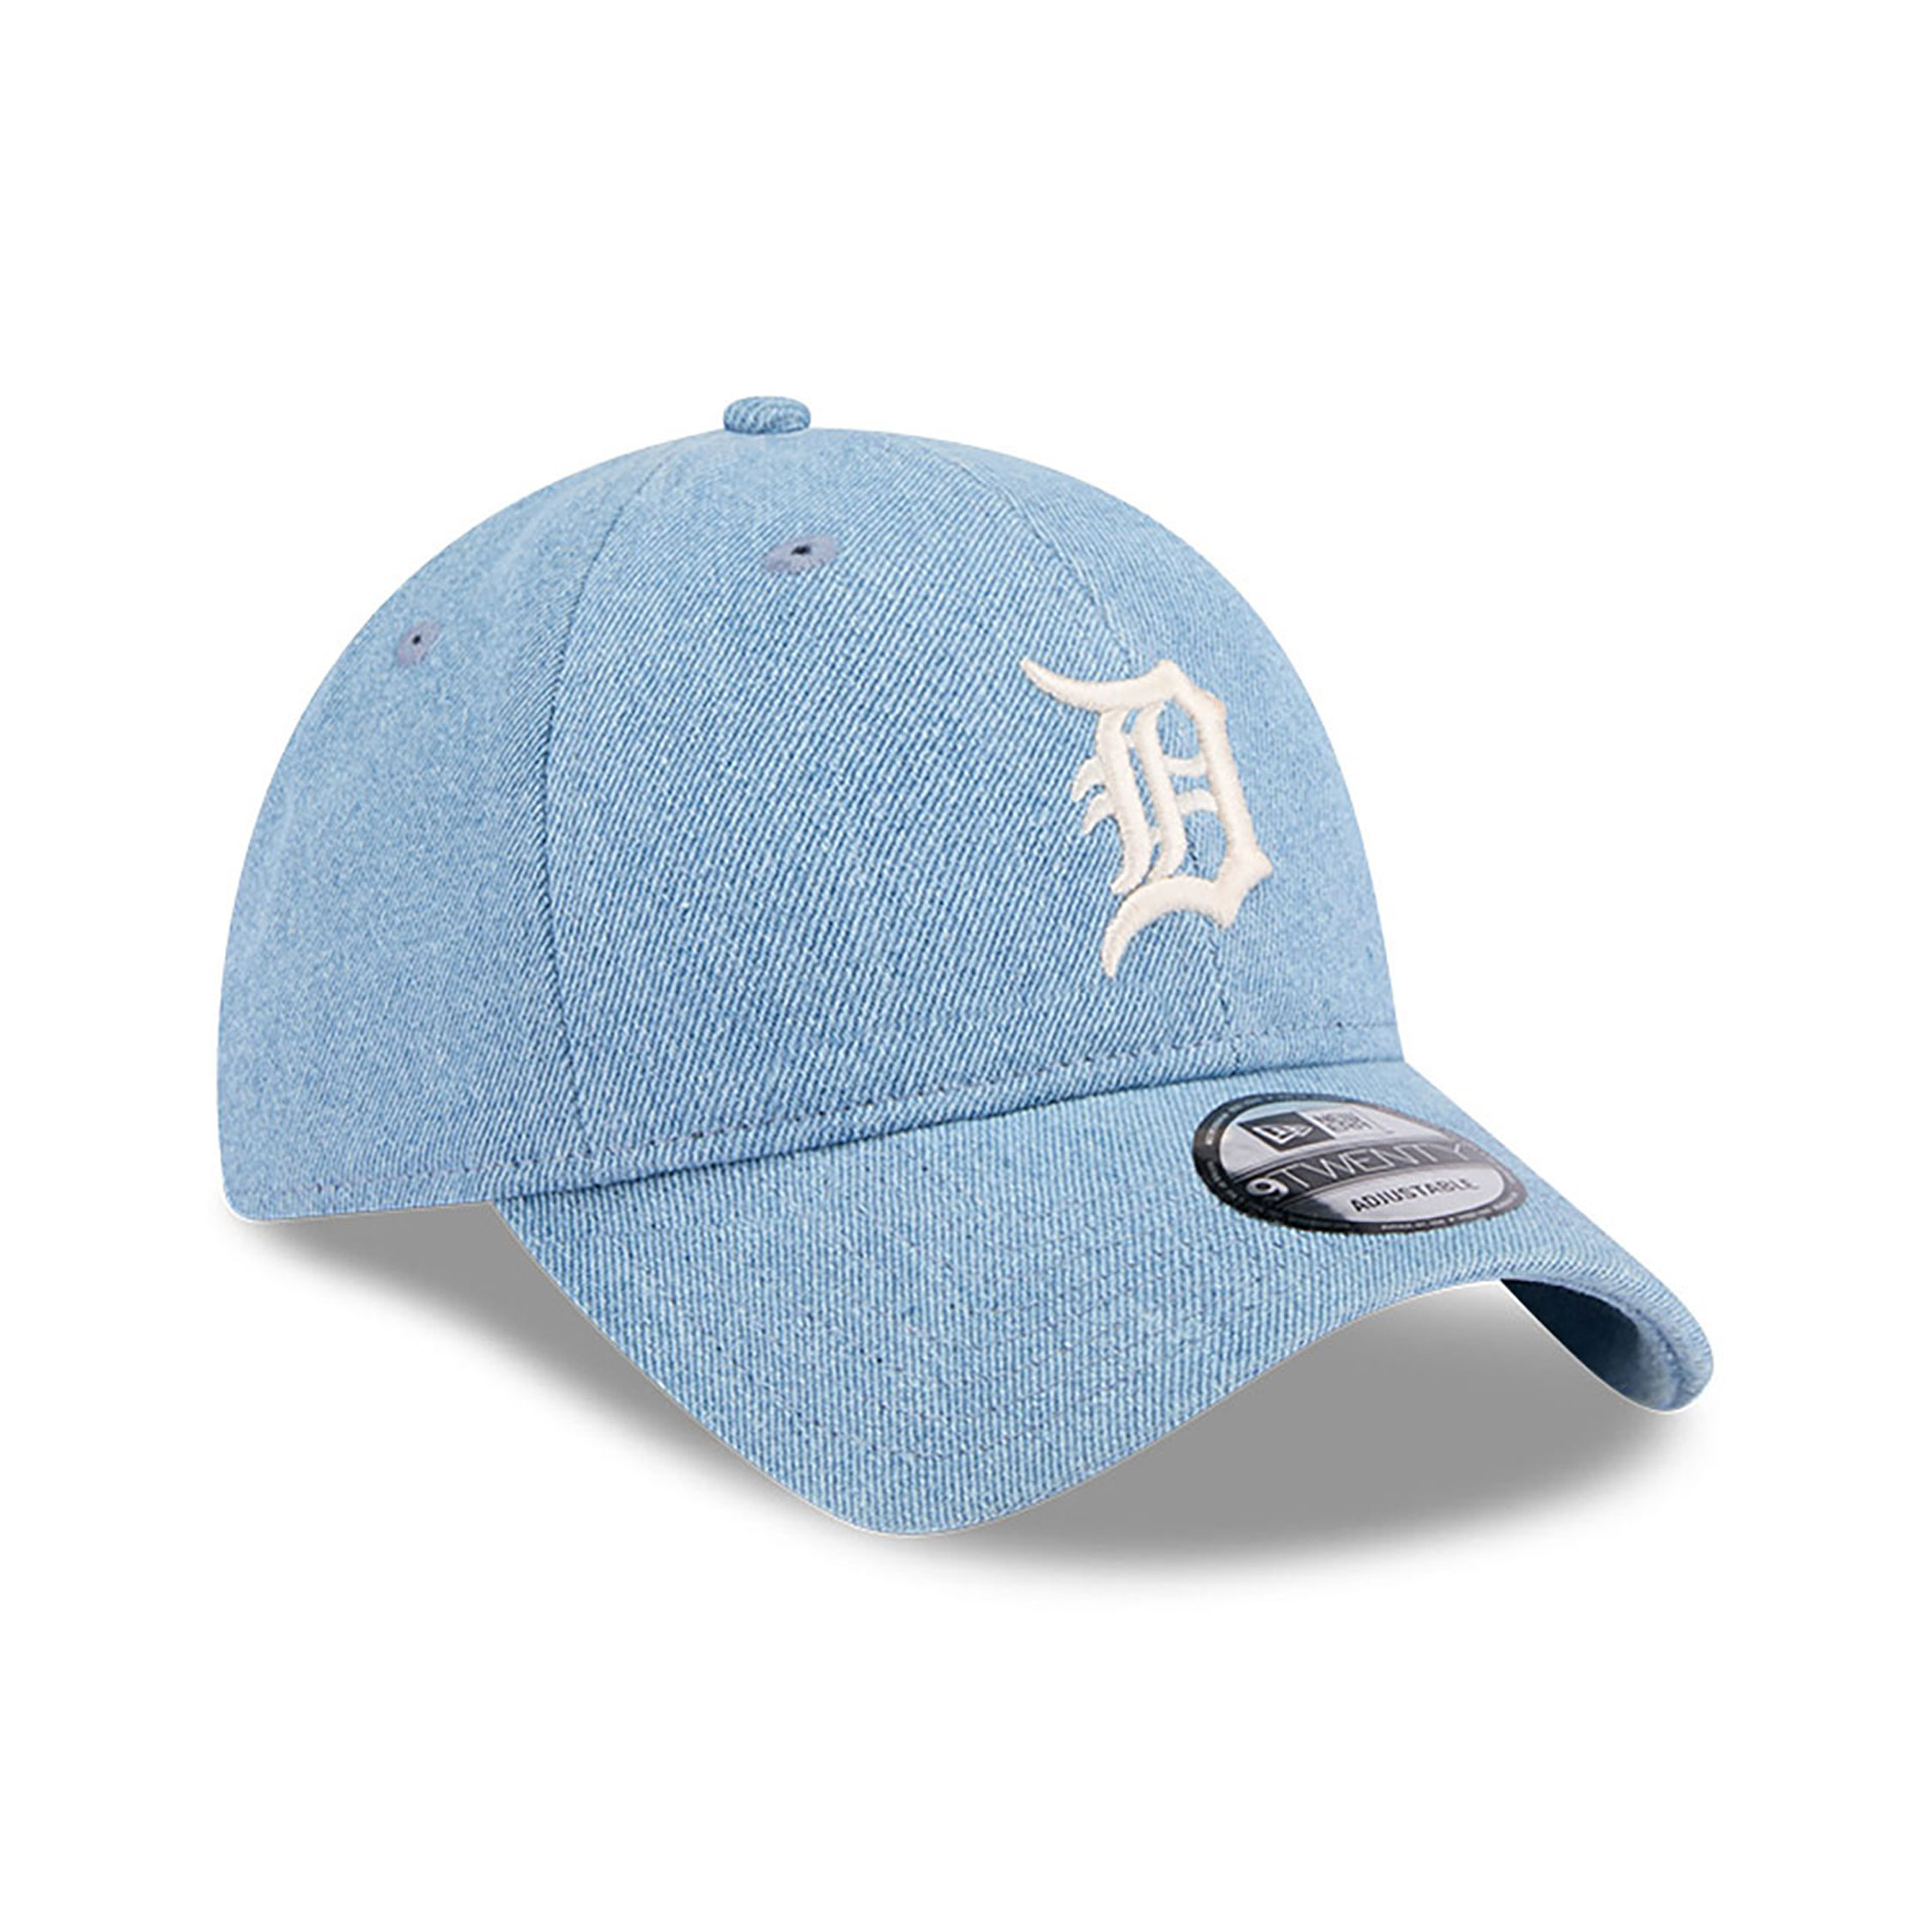 Detroit Tigers Washed Denim Light Blue 9TWENTY Adjustable Cap